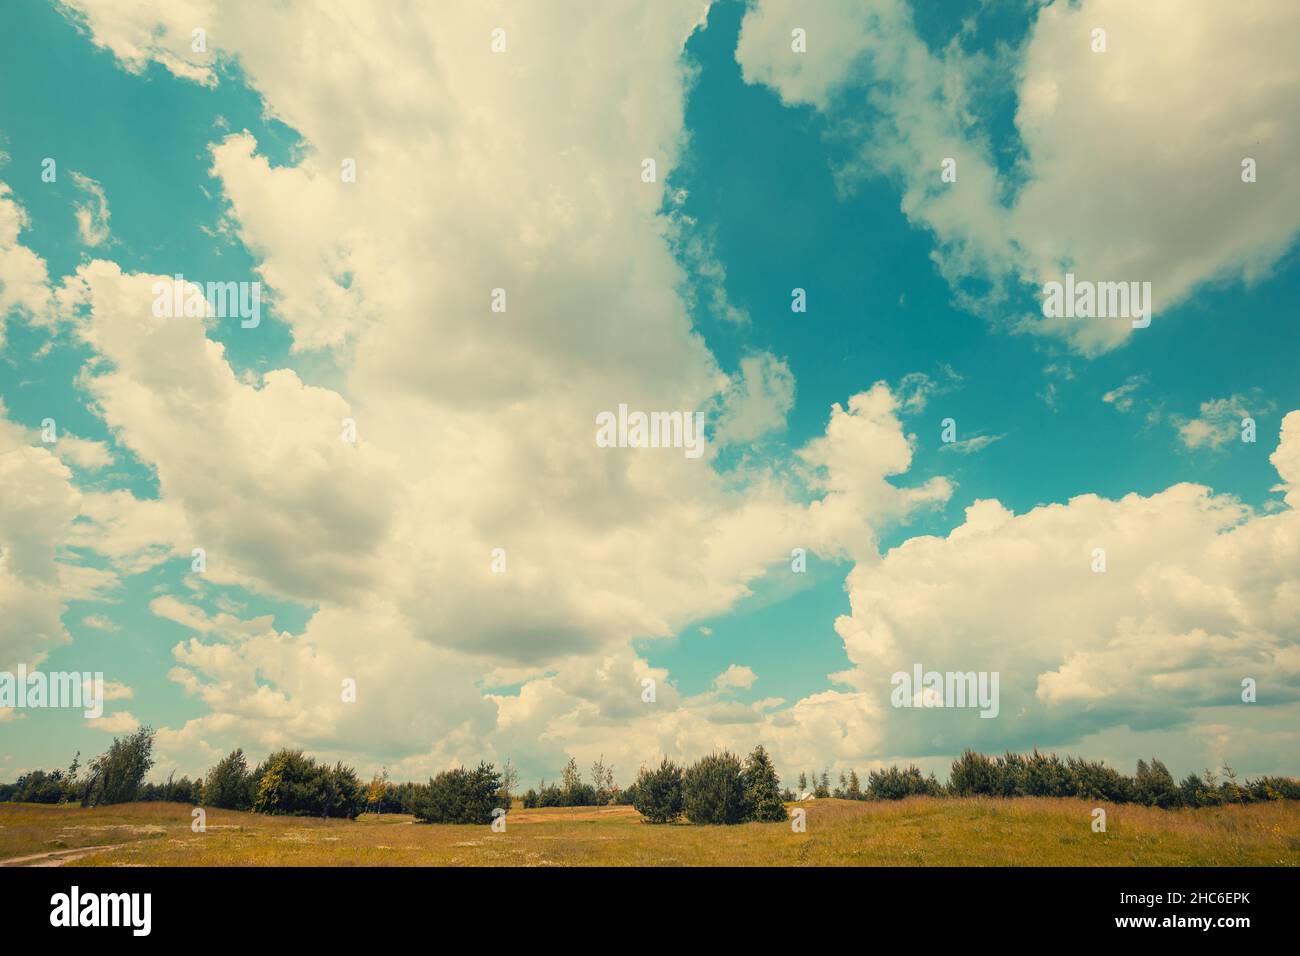 Sommer ländliche Landschaft. Himmel mit flauschigen Wolken über einem unbebauten Feld an einem sonnigen Tag Stockfoto